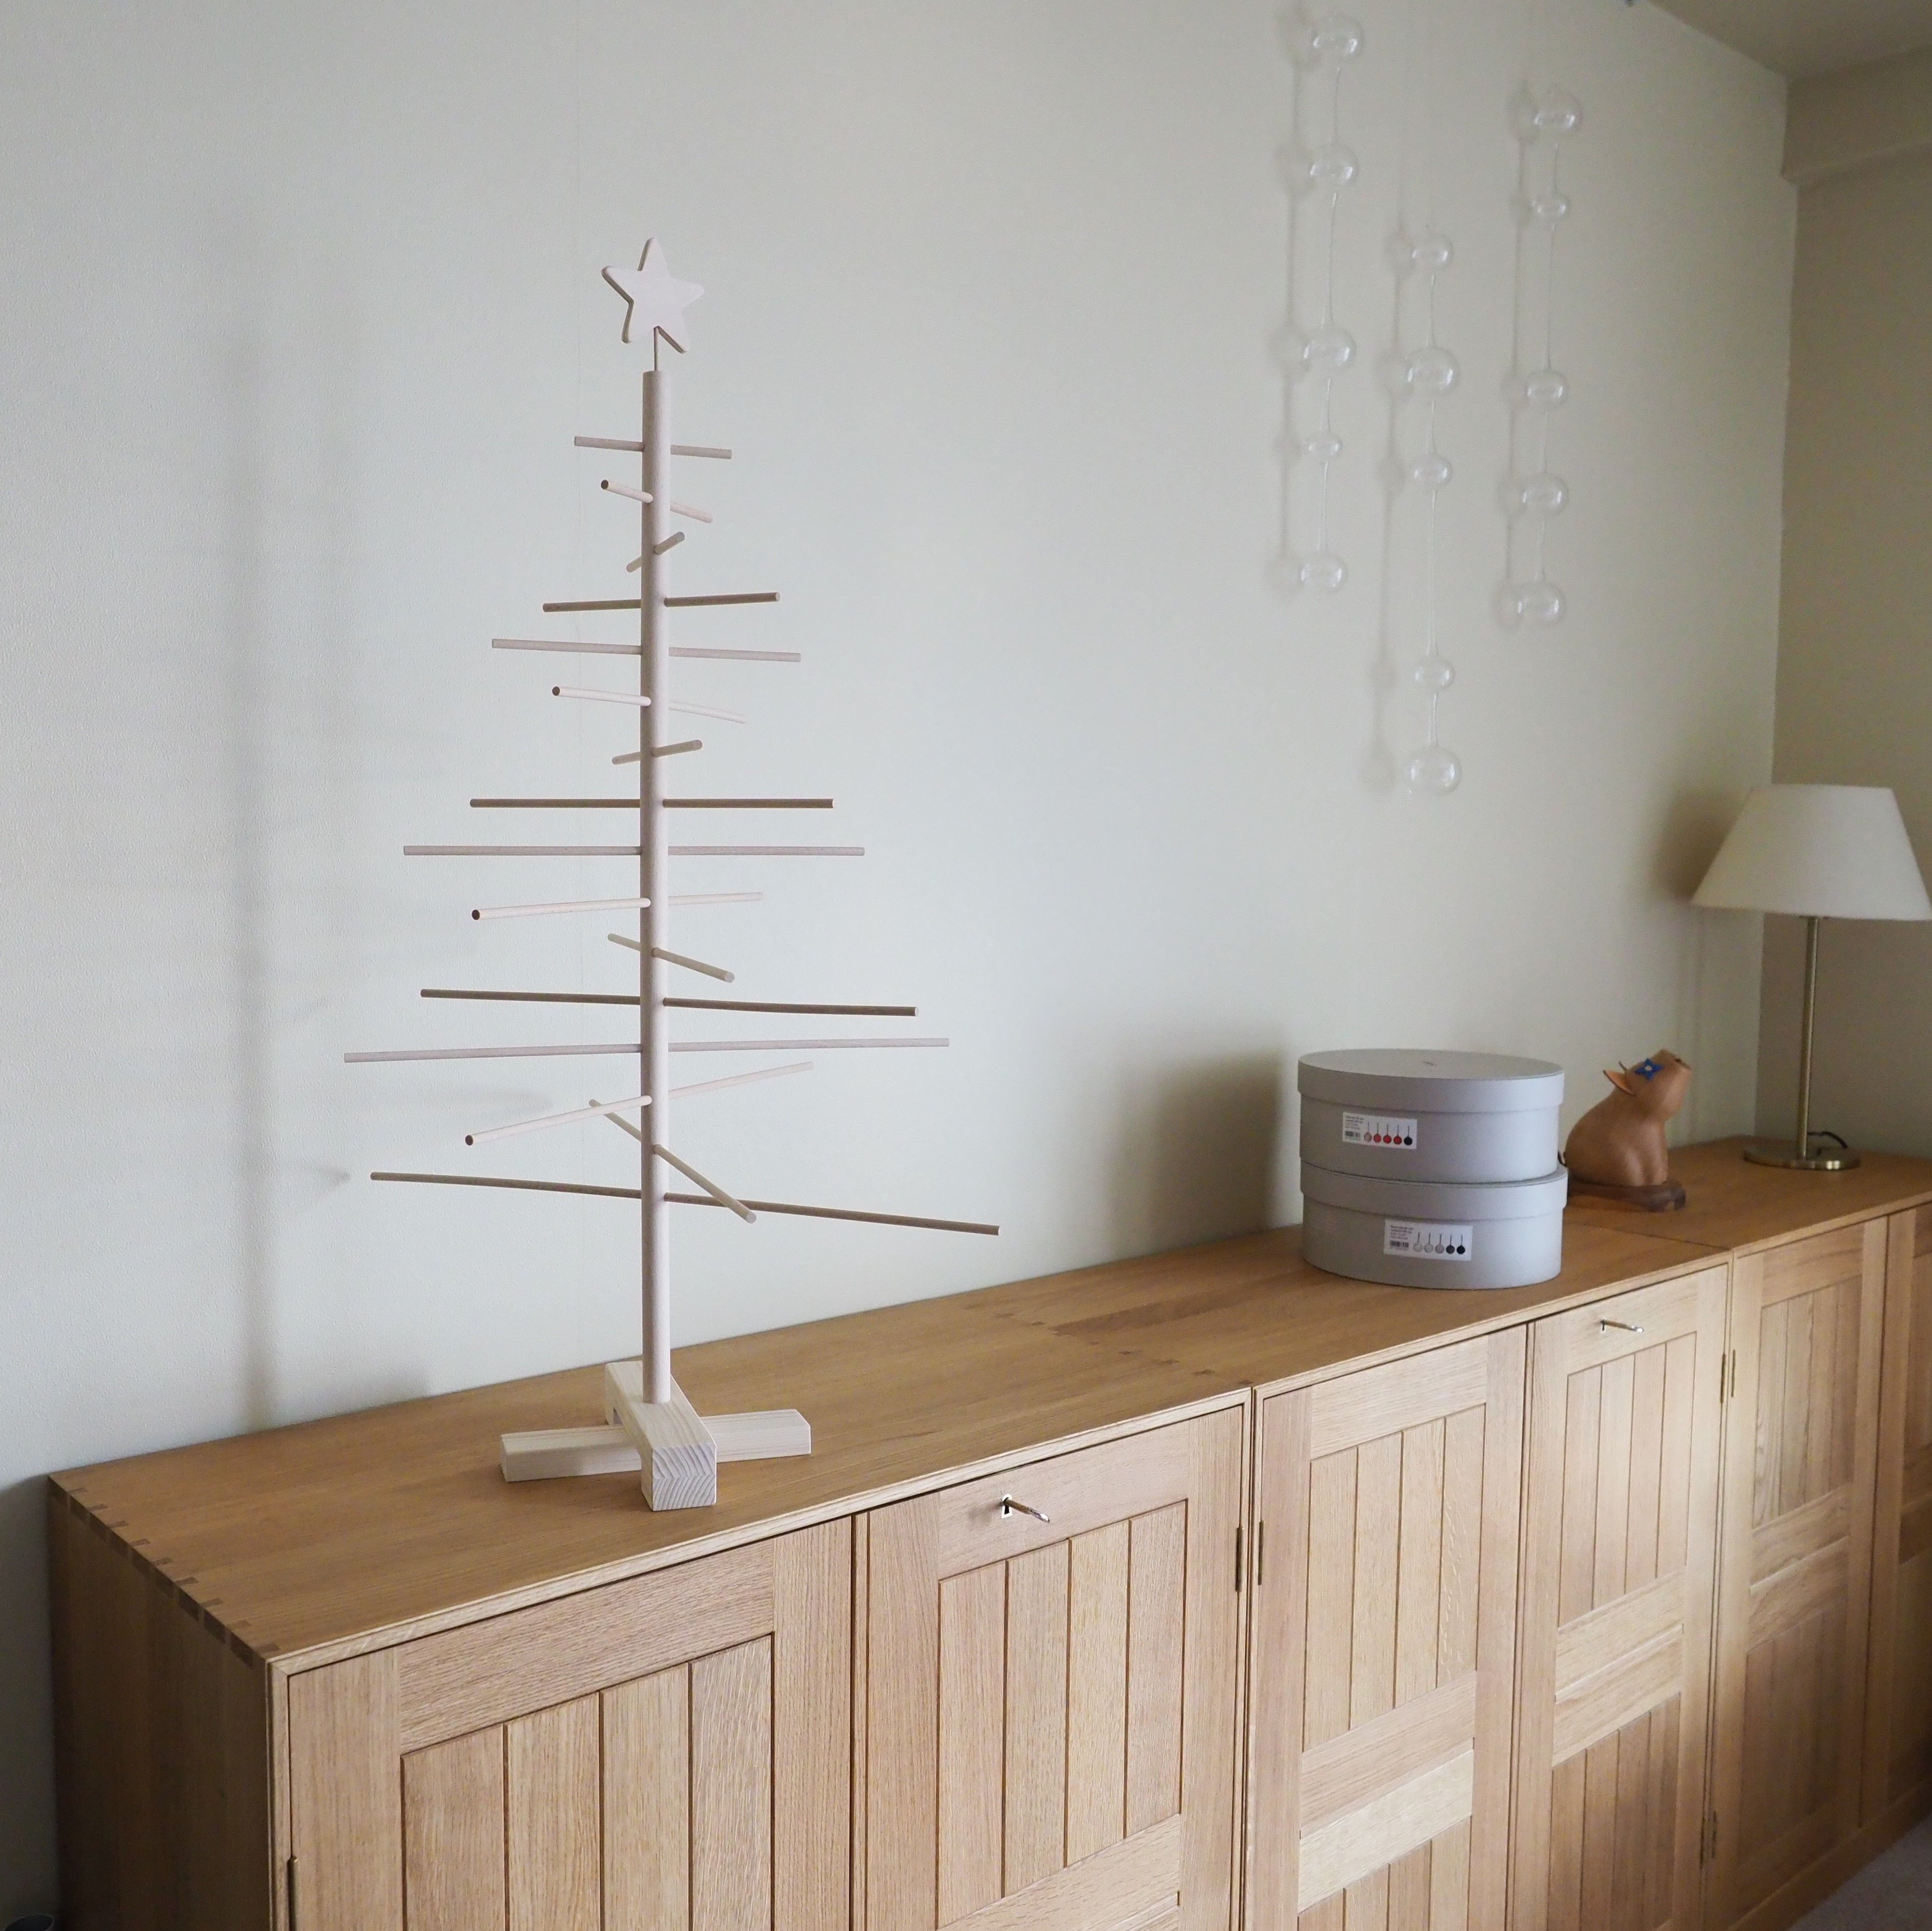 木製のクリスマスツリーが届きました。組み立て式でスタイリッシュな「Xmas3」 | PLANNING